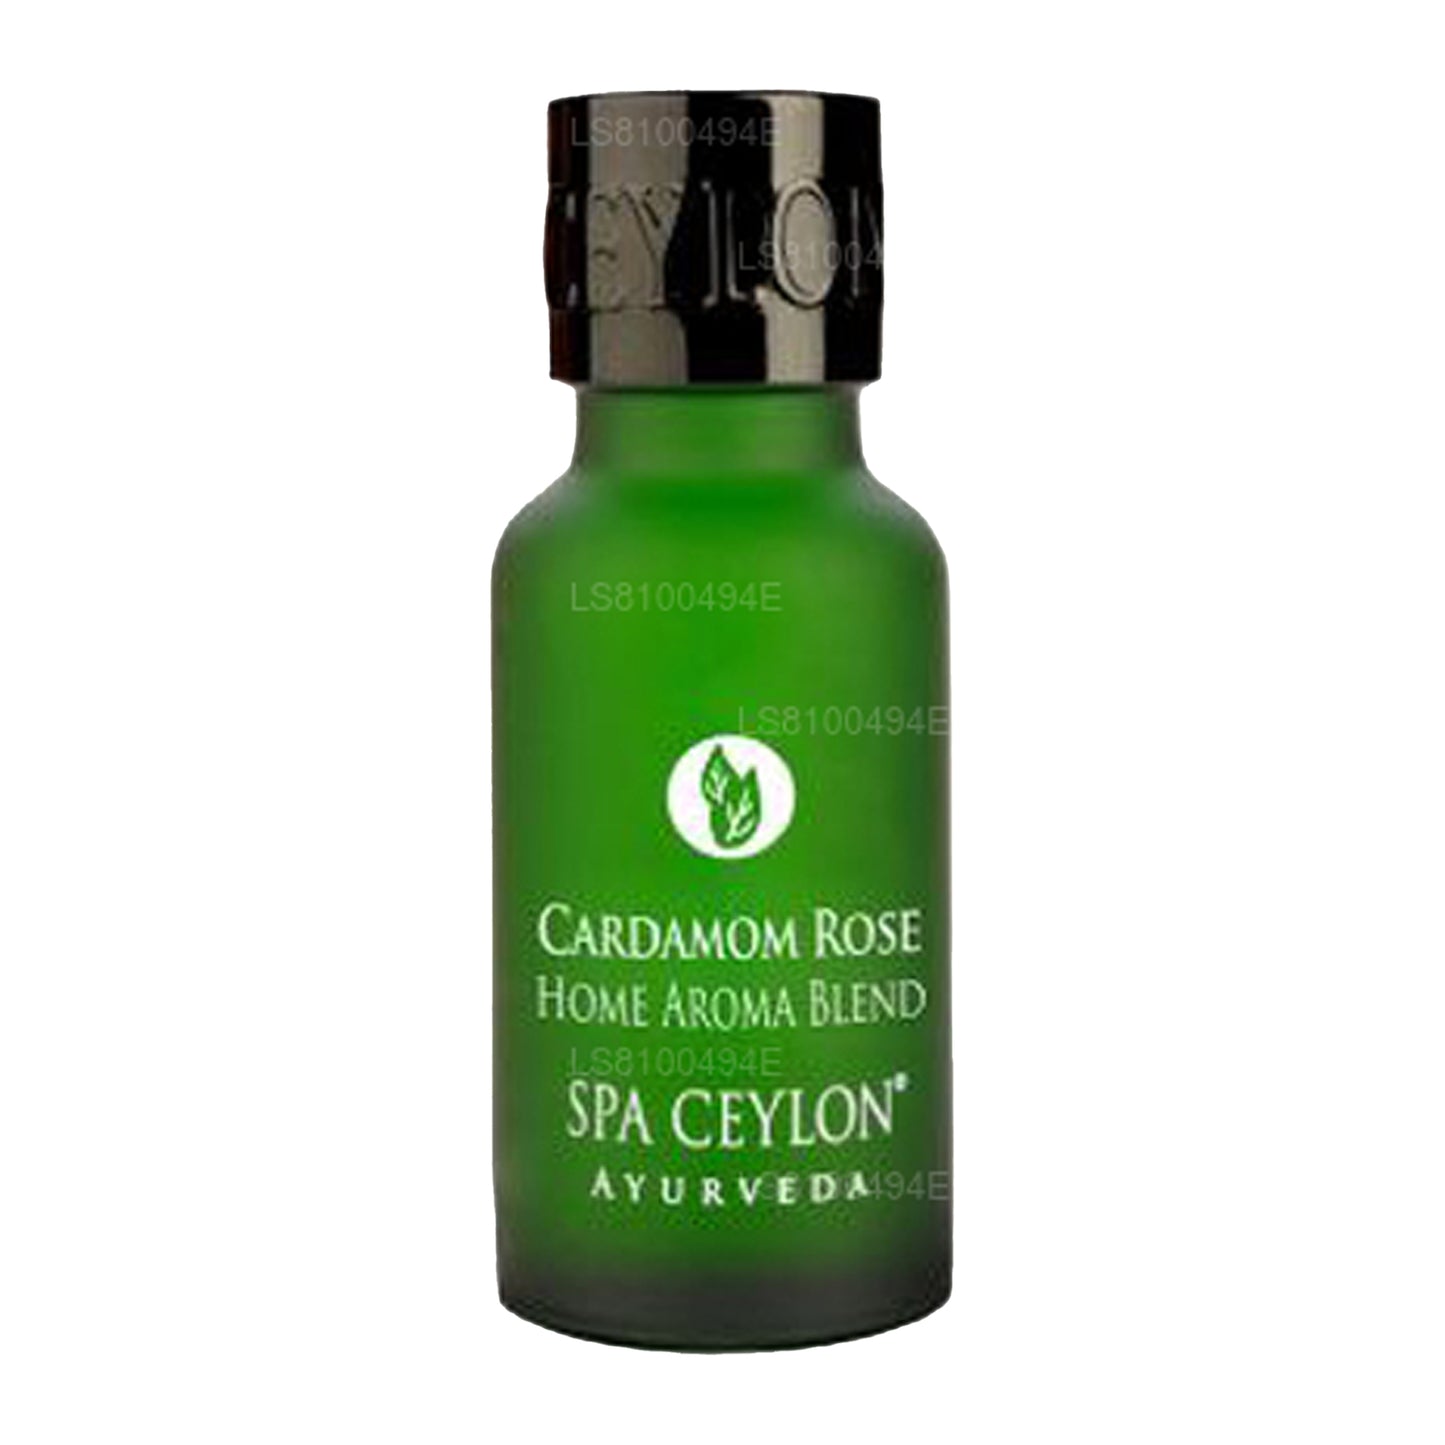 Spa Ceylon Cardamom Rose - Home Aroma Blend (20ml)